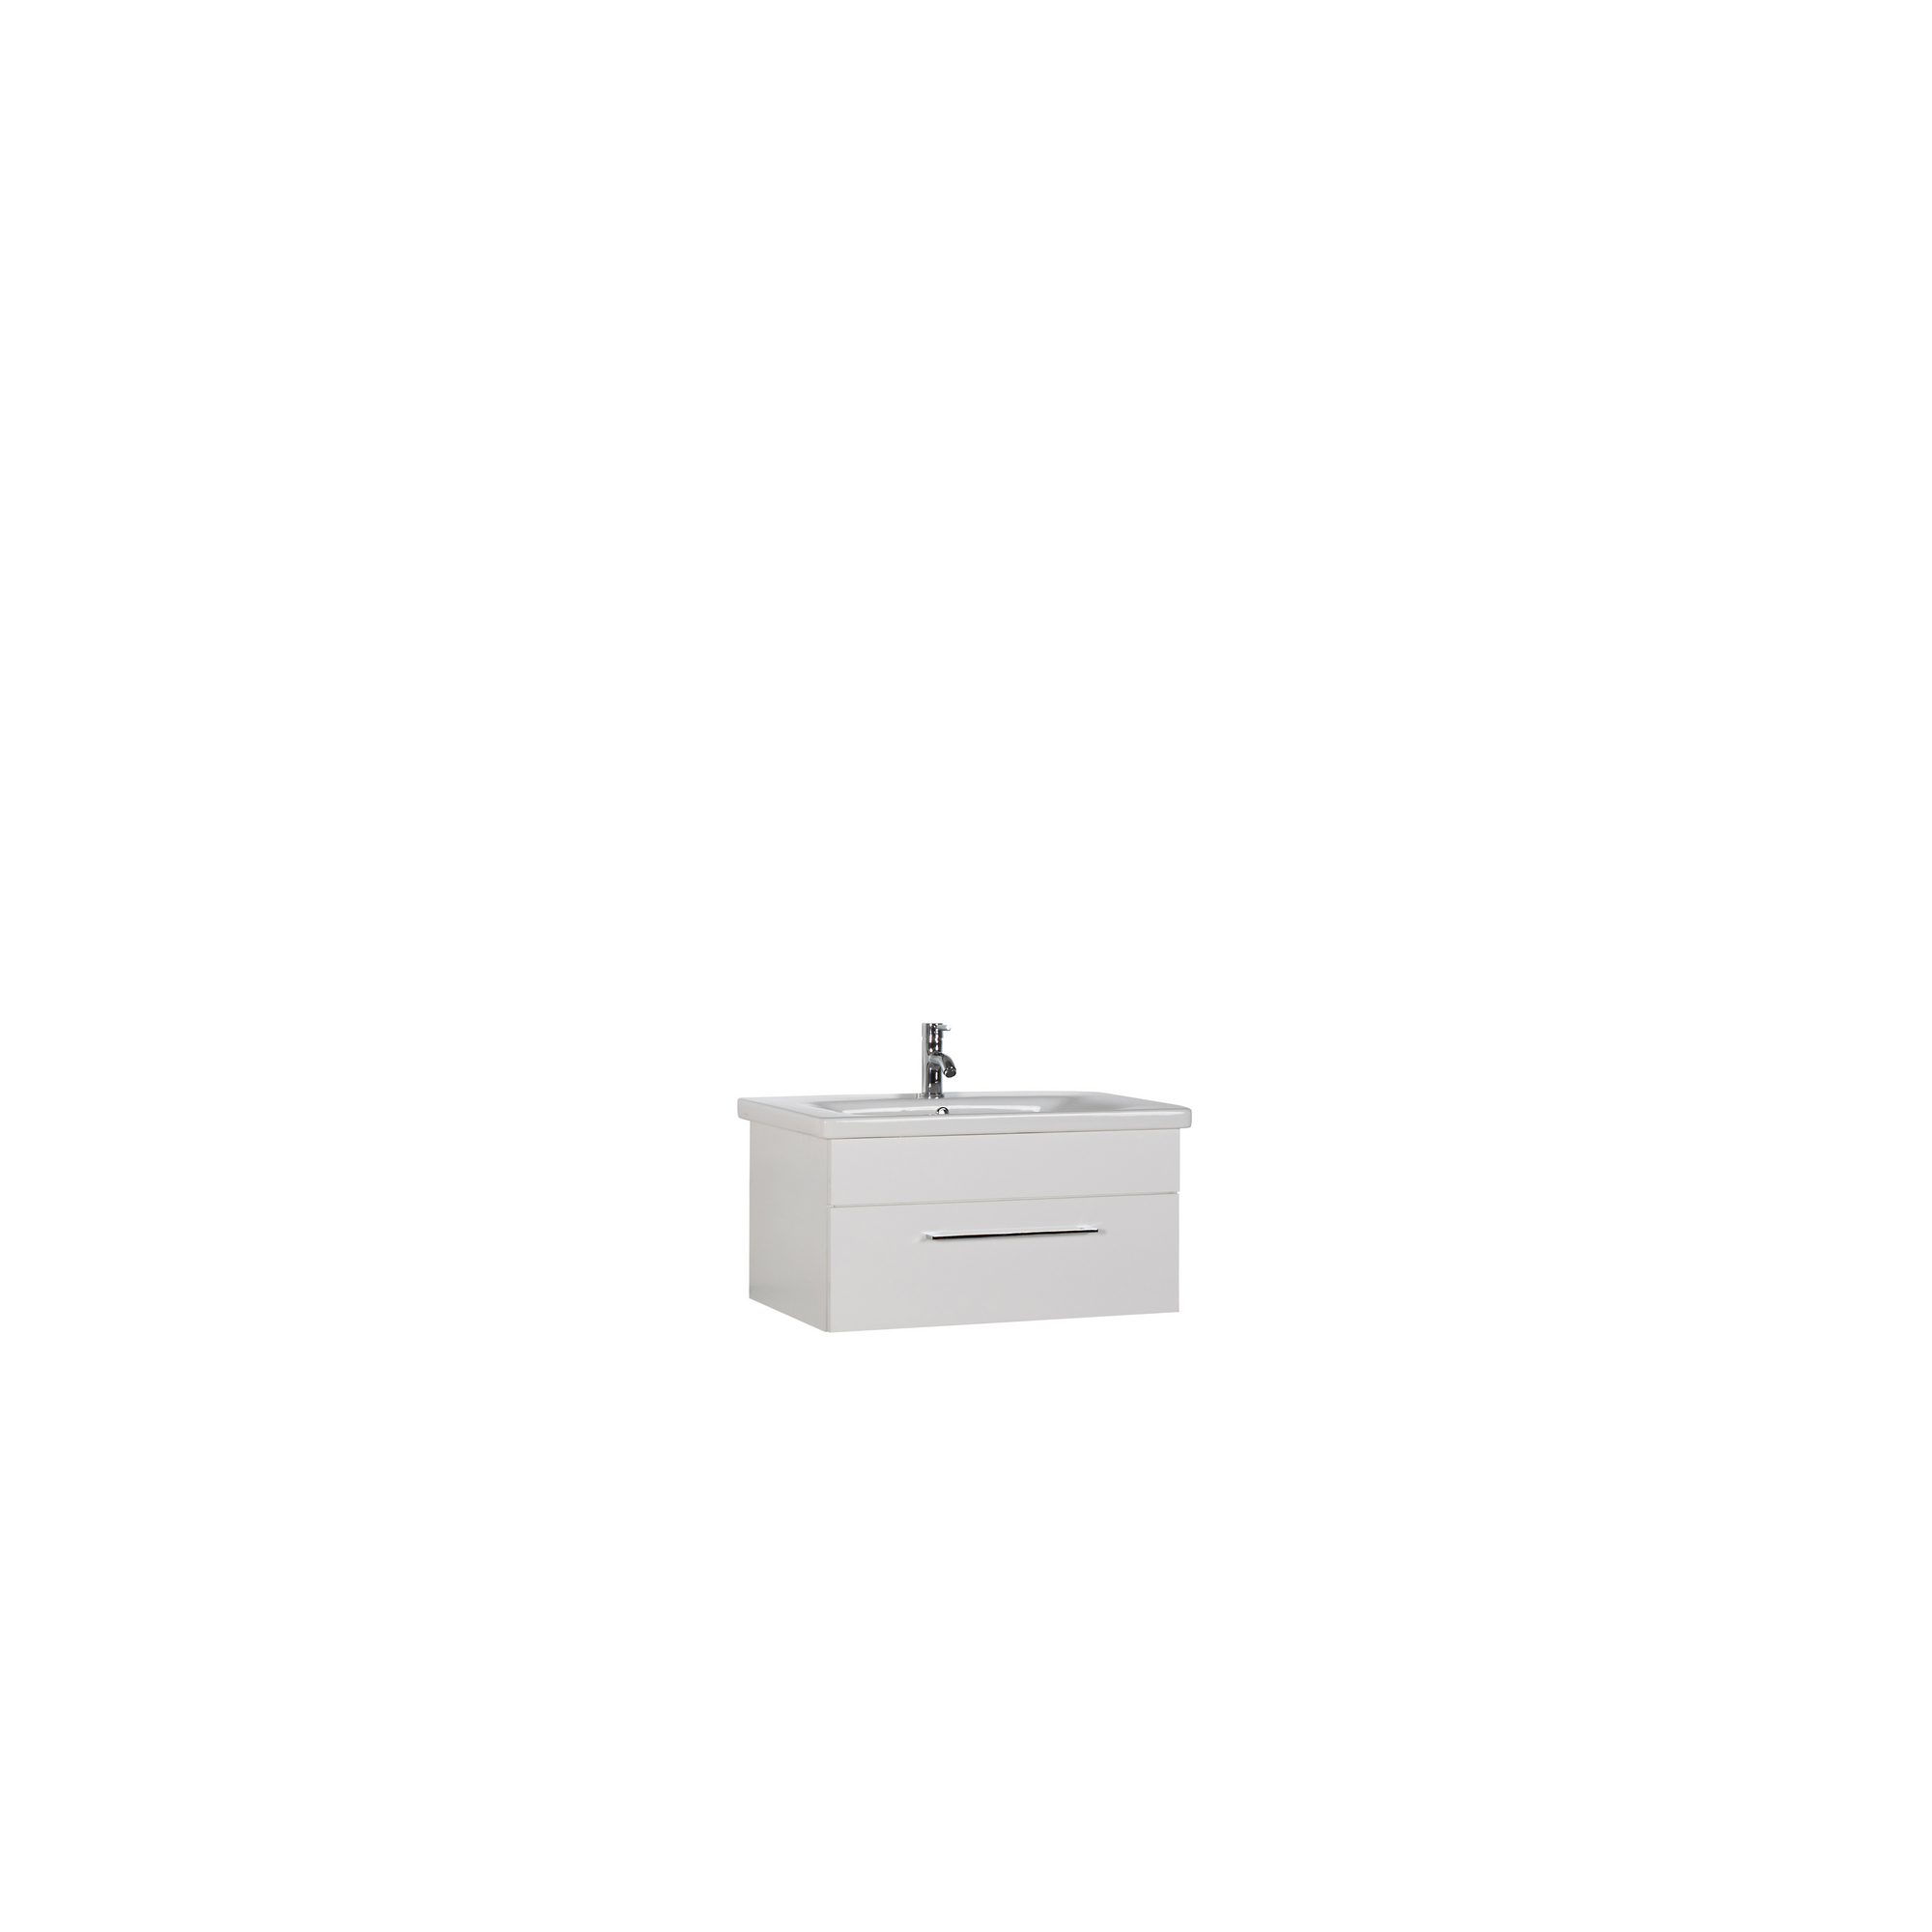 OPTIFIT Waschtisch 'OPTIpremio 2400modern' weiß 80 x 40,6 x 45,5 cm